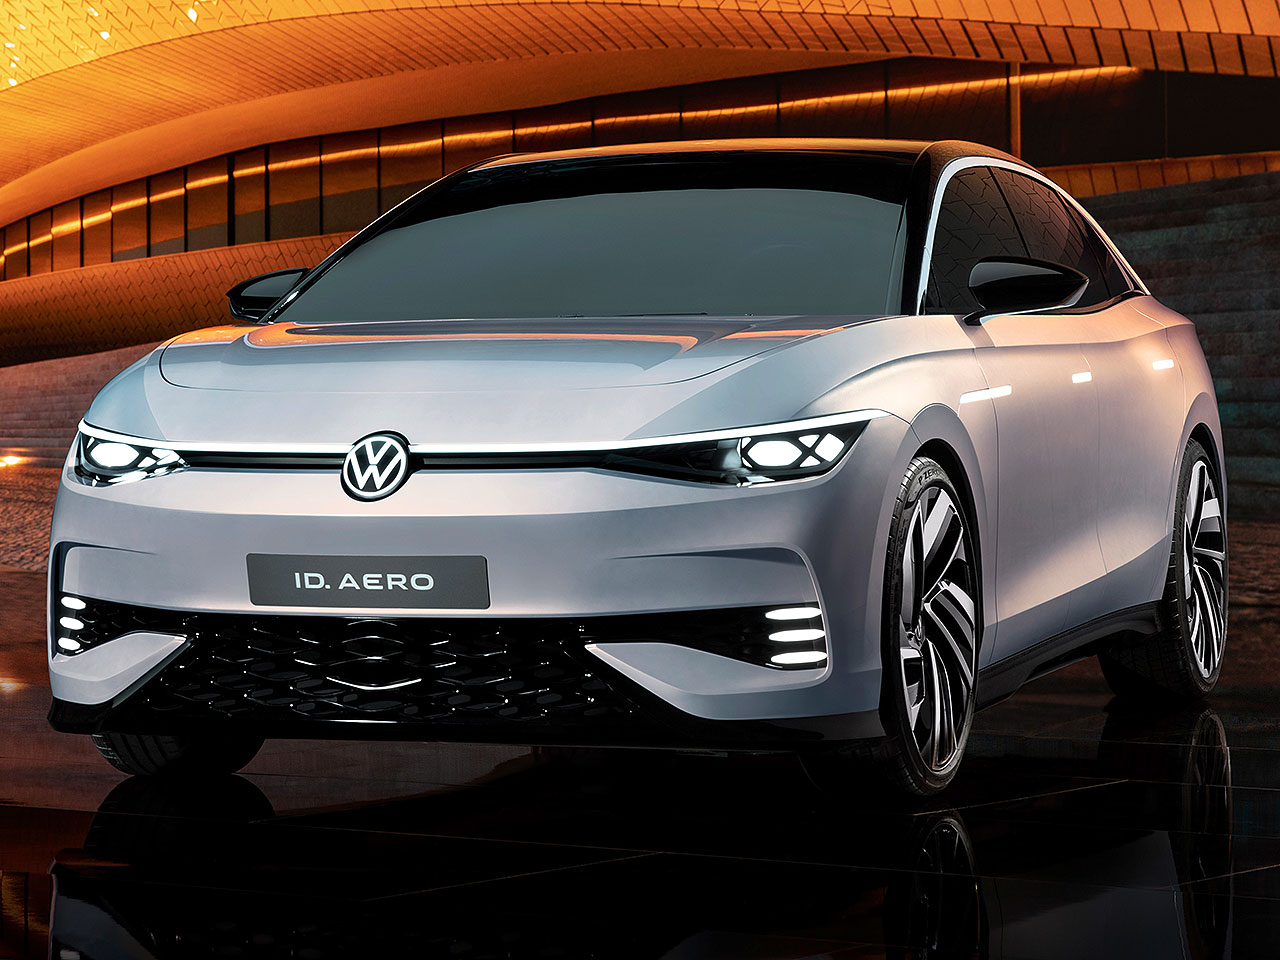 Volkswagen ID. Aero Concept